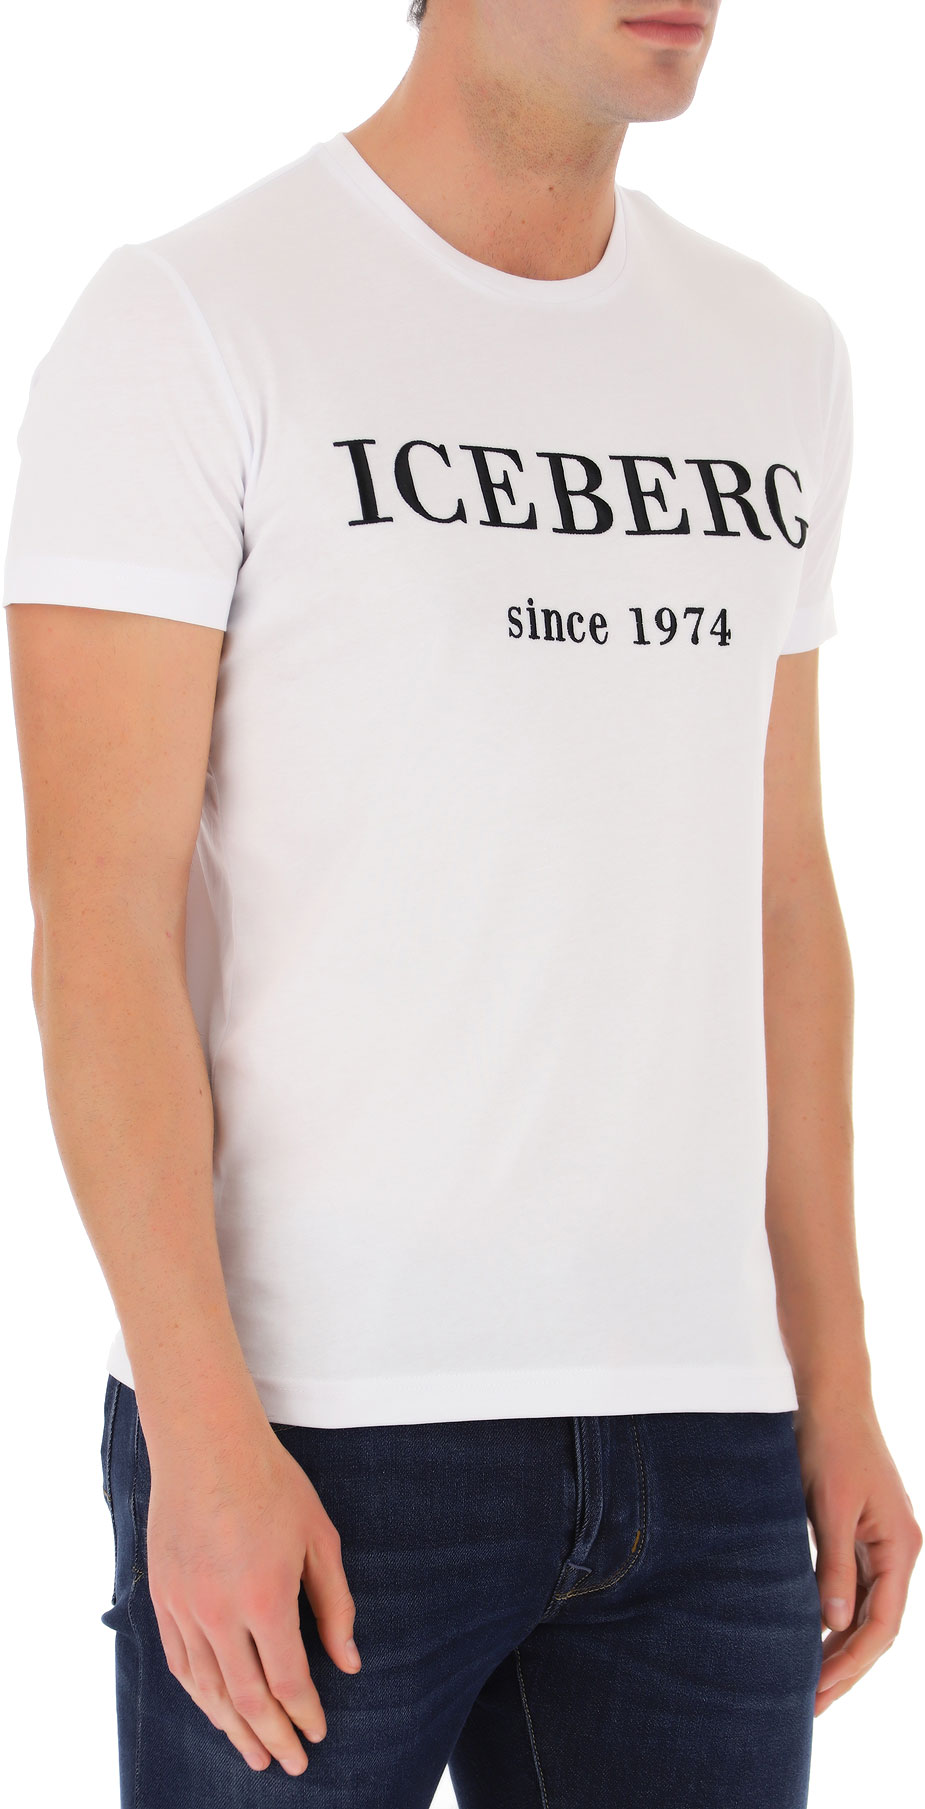 iceberg clothing rating